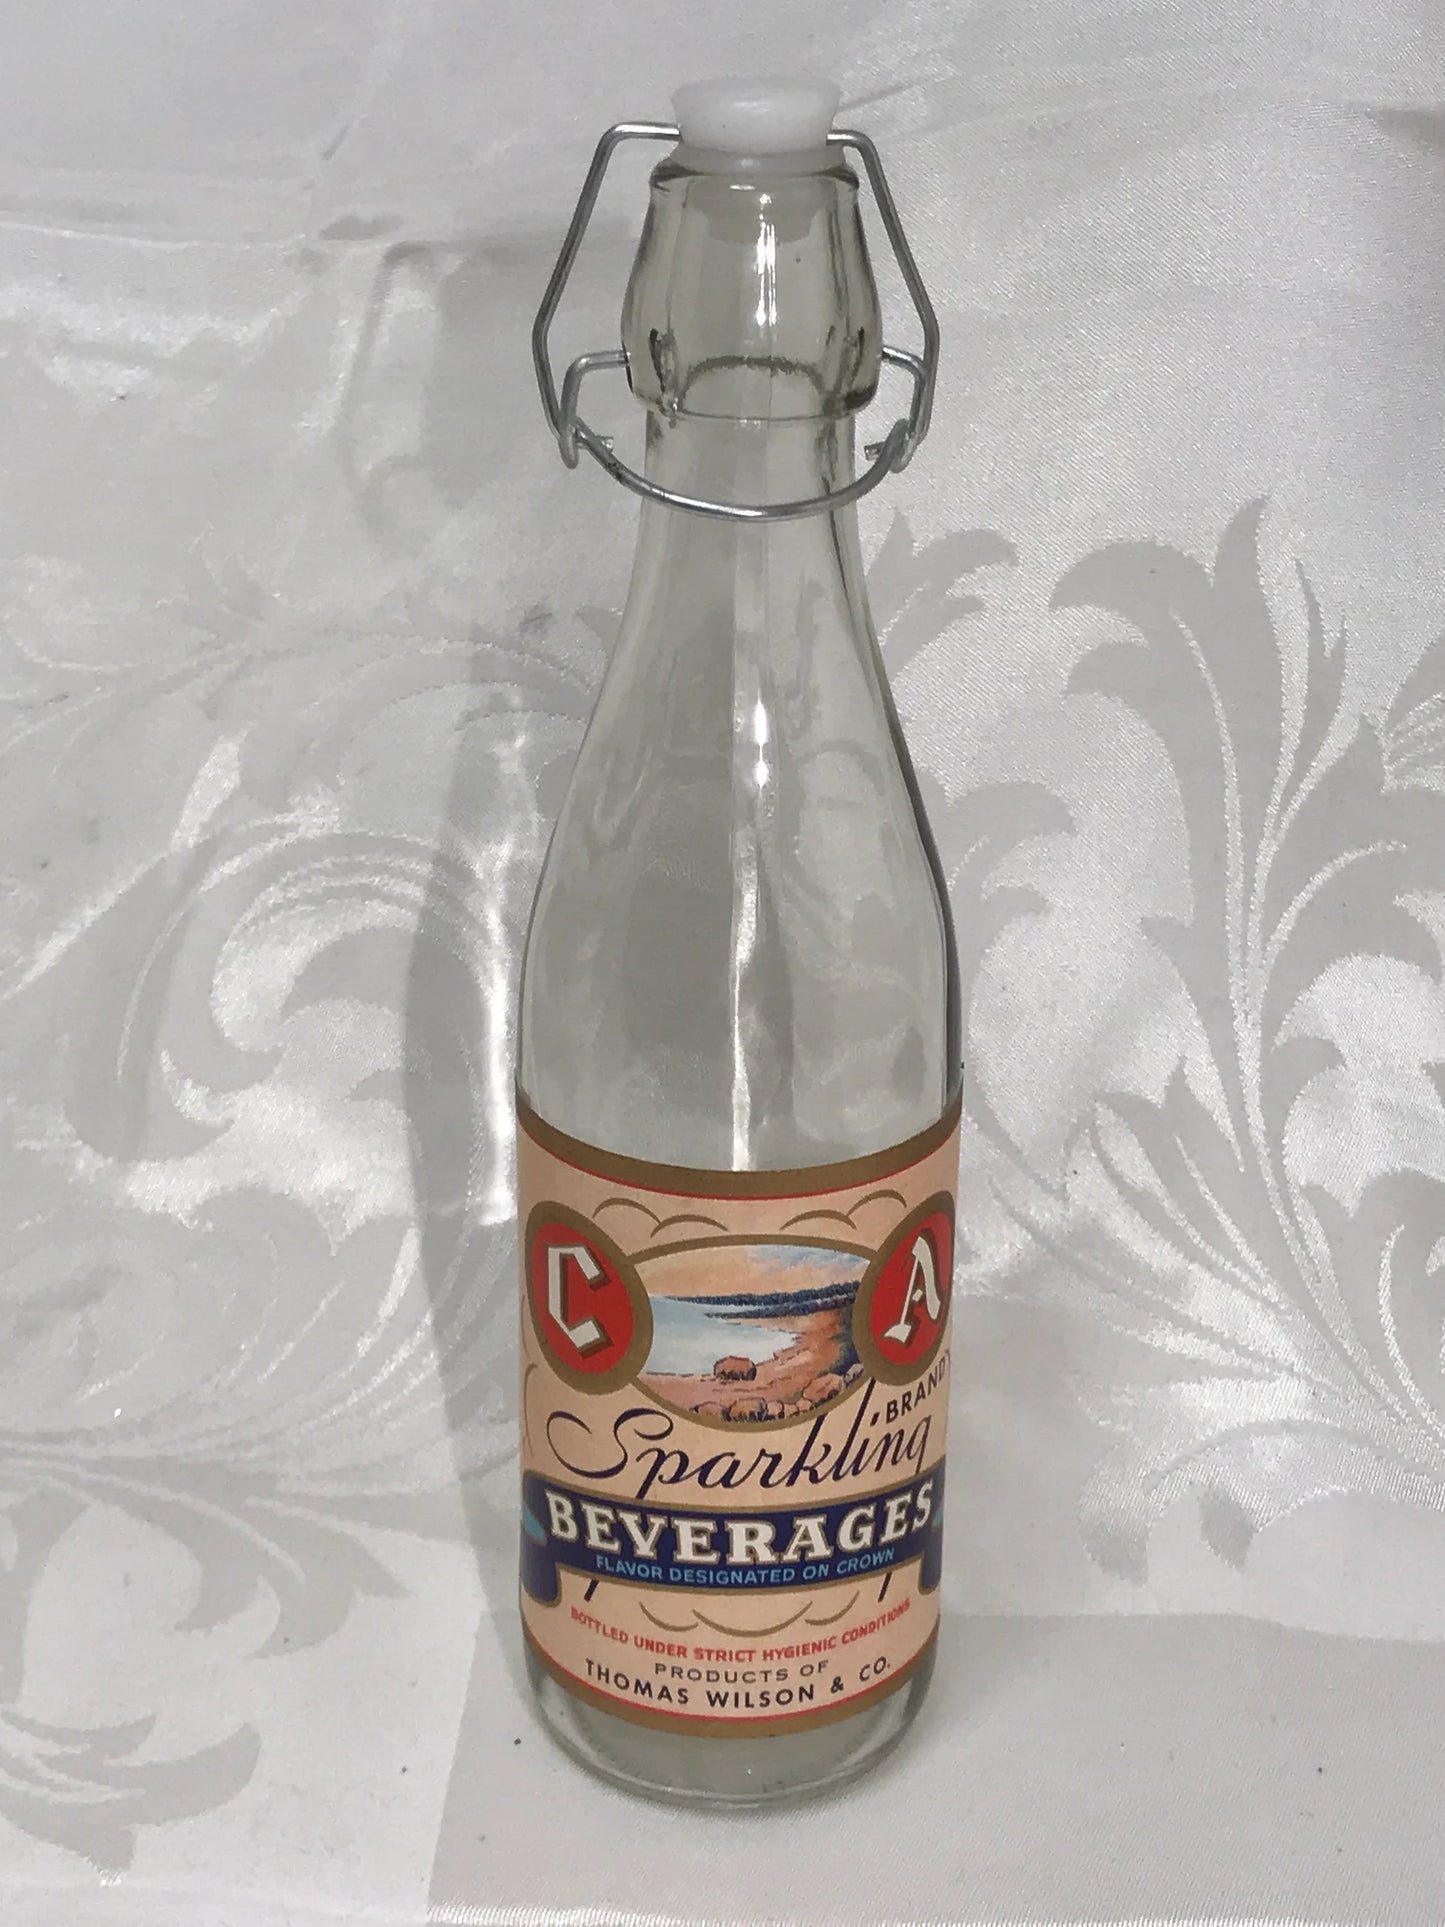 1930s Vintage C&A Sparkling Beverage Bottle